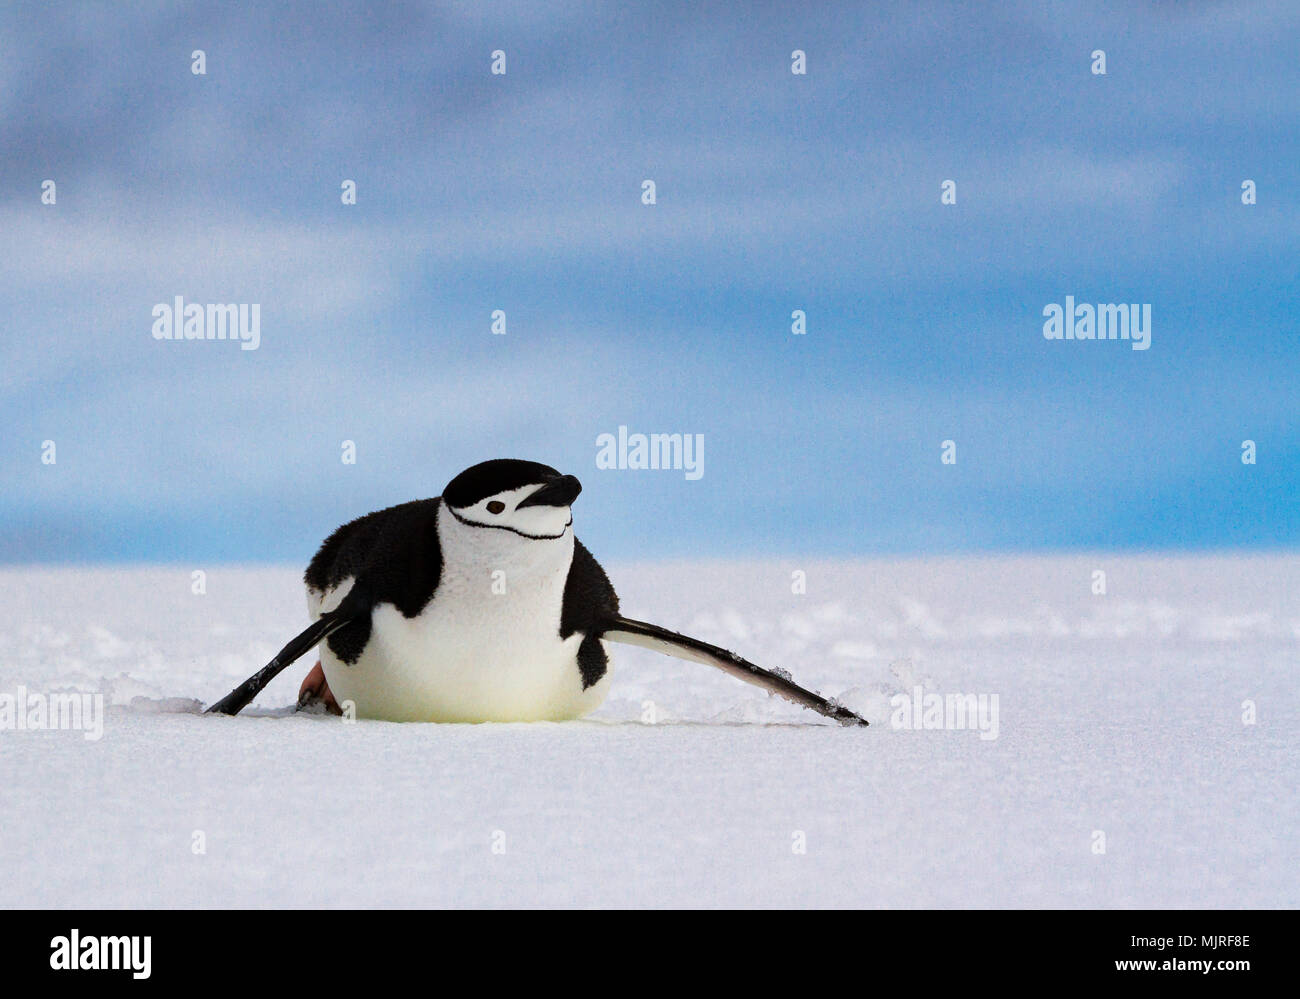 Manchot à Jugulaire (Pygoscelis antarcticus) glissant le long de son estomac sur blanche neige contre un ciel bleu, de l'Antarctique Banque D'Images